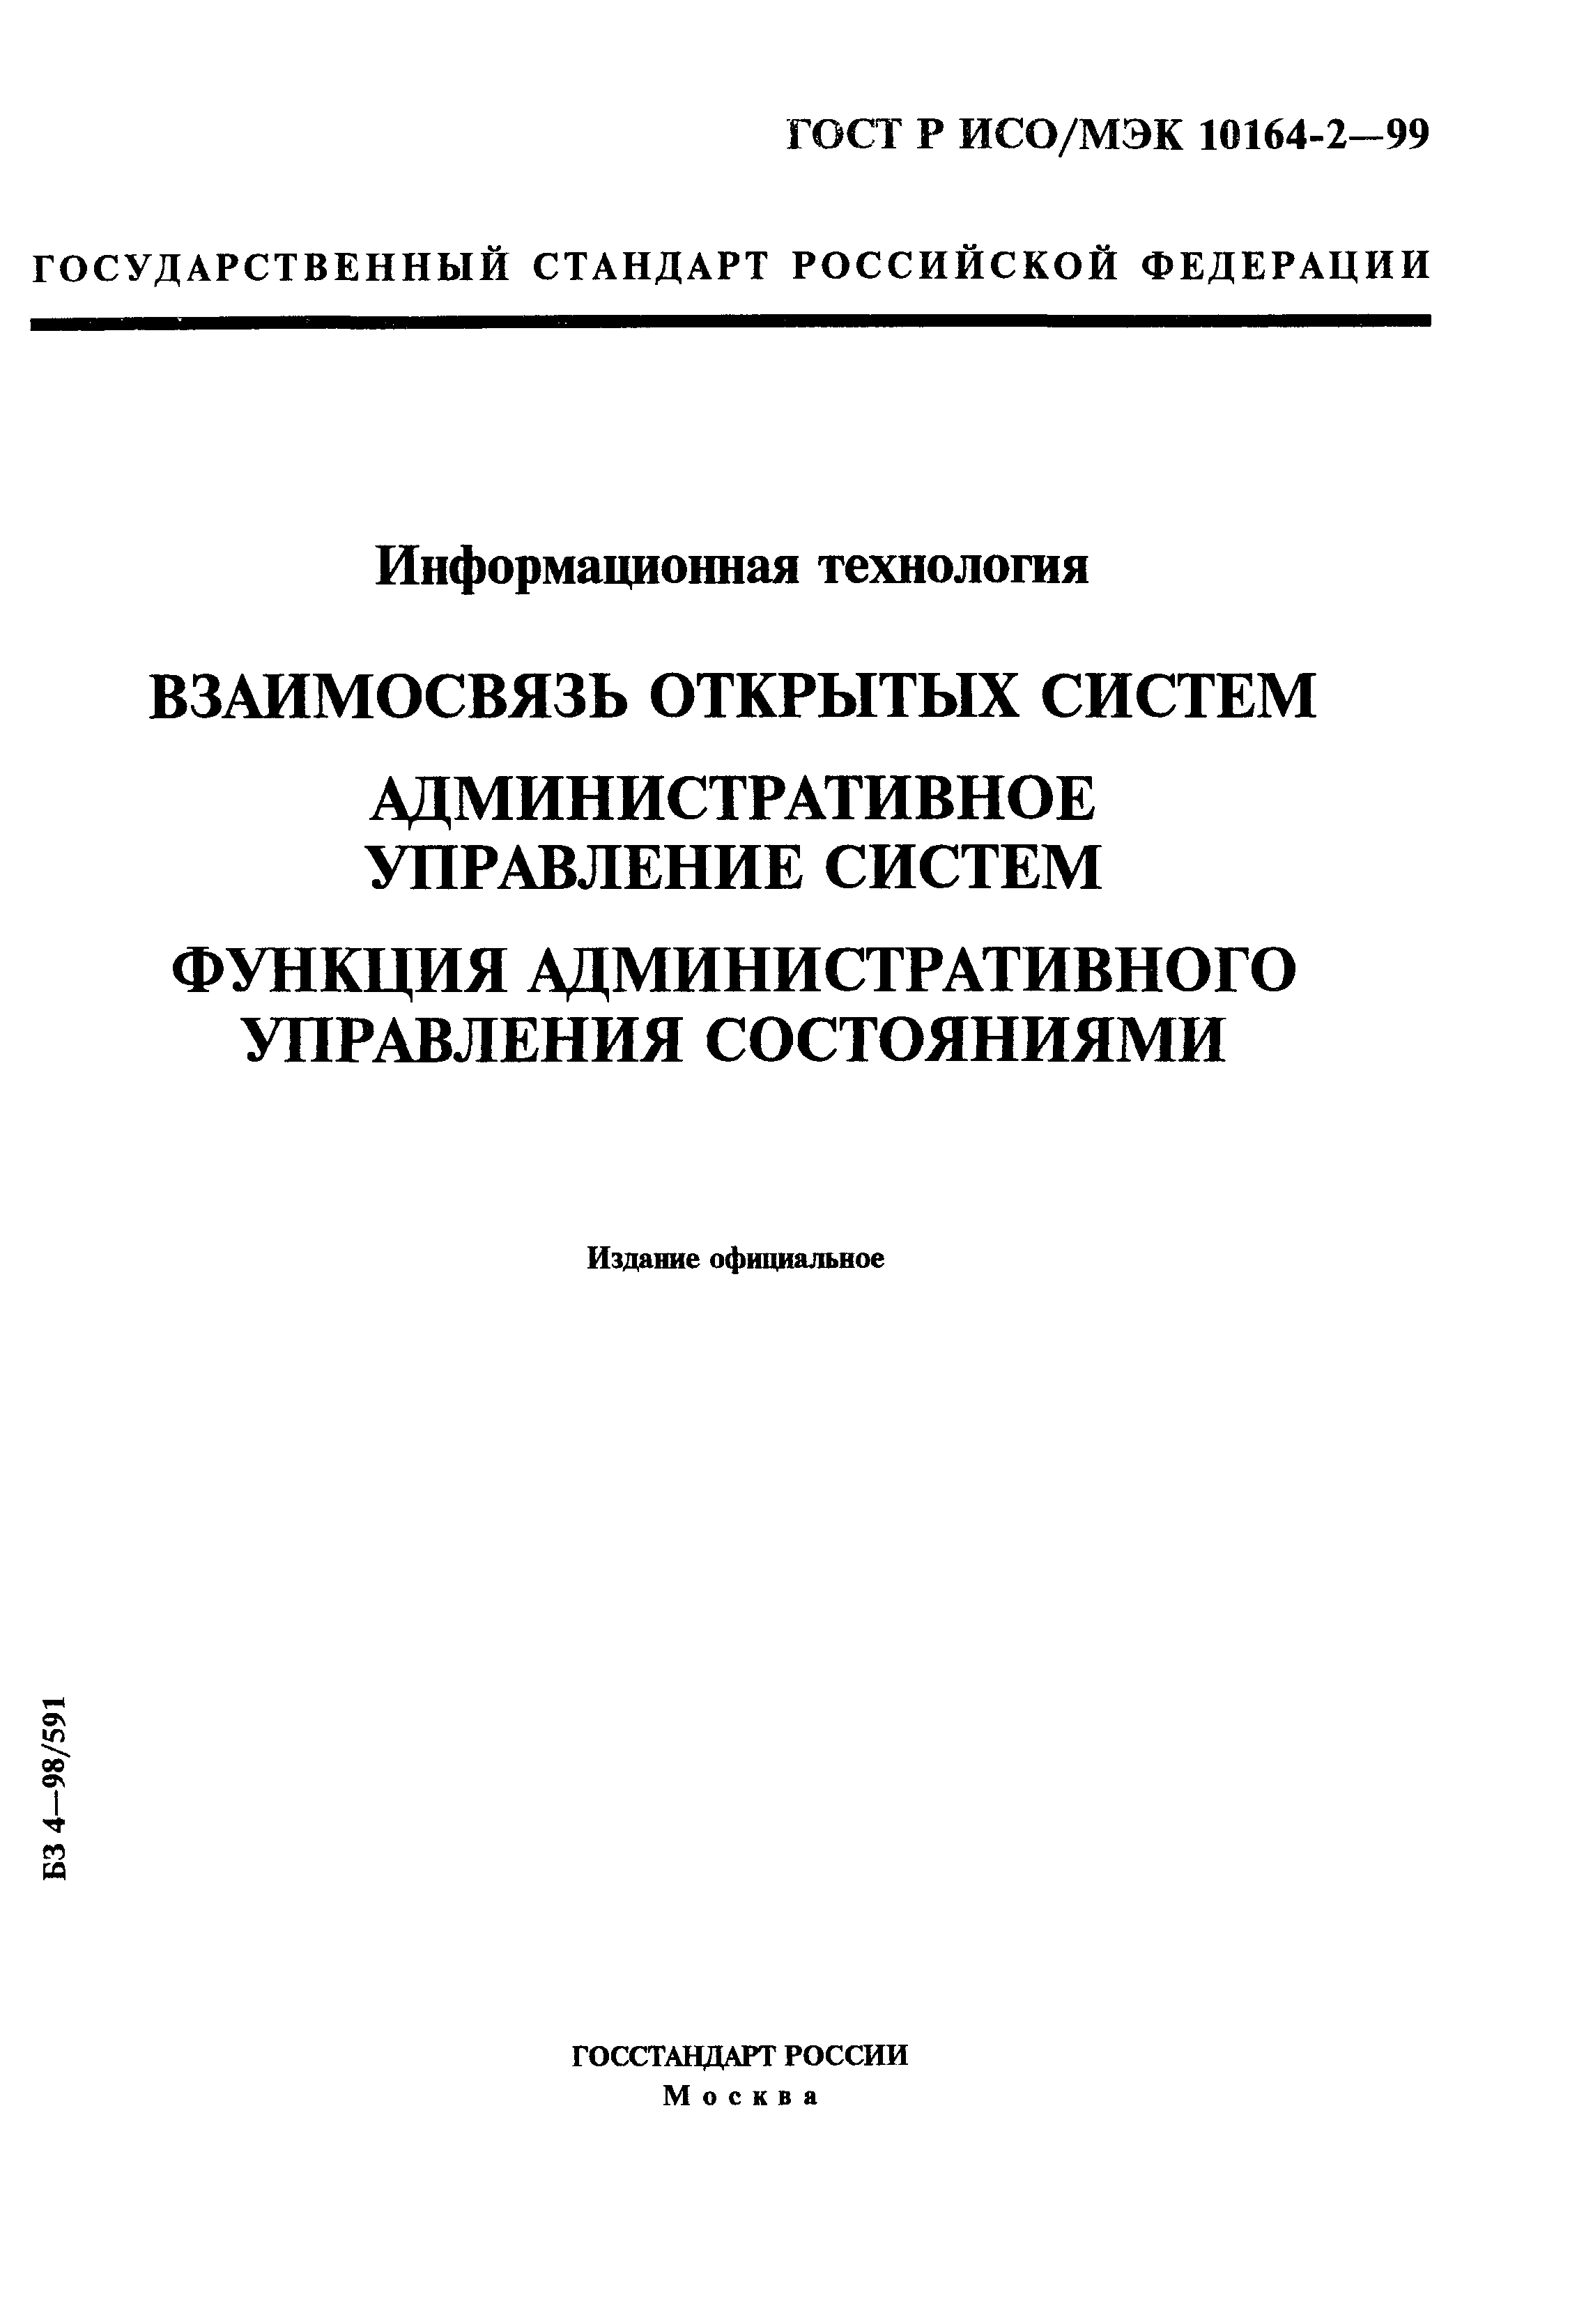 ГОСТ Р ИСО/МЭК 10164-2-99